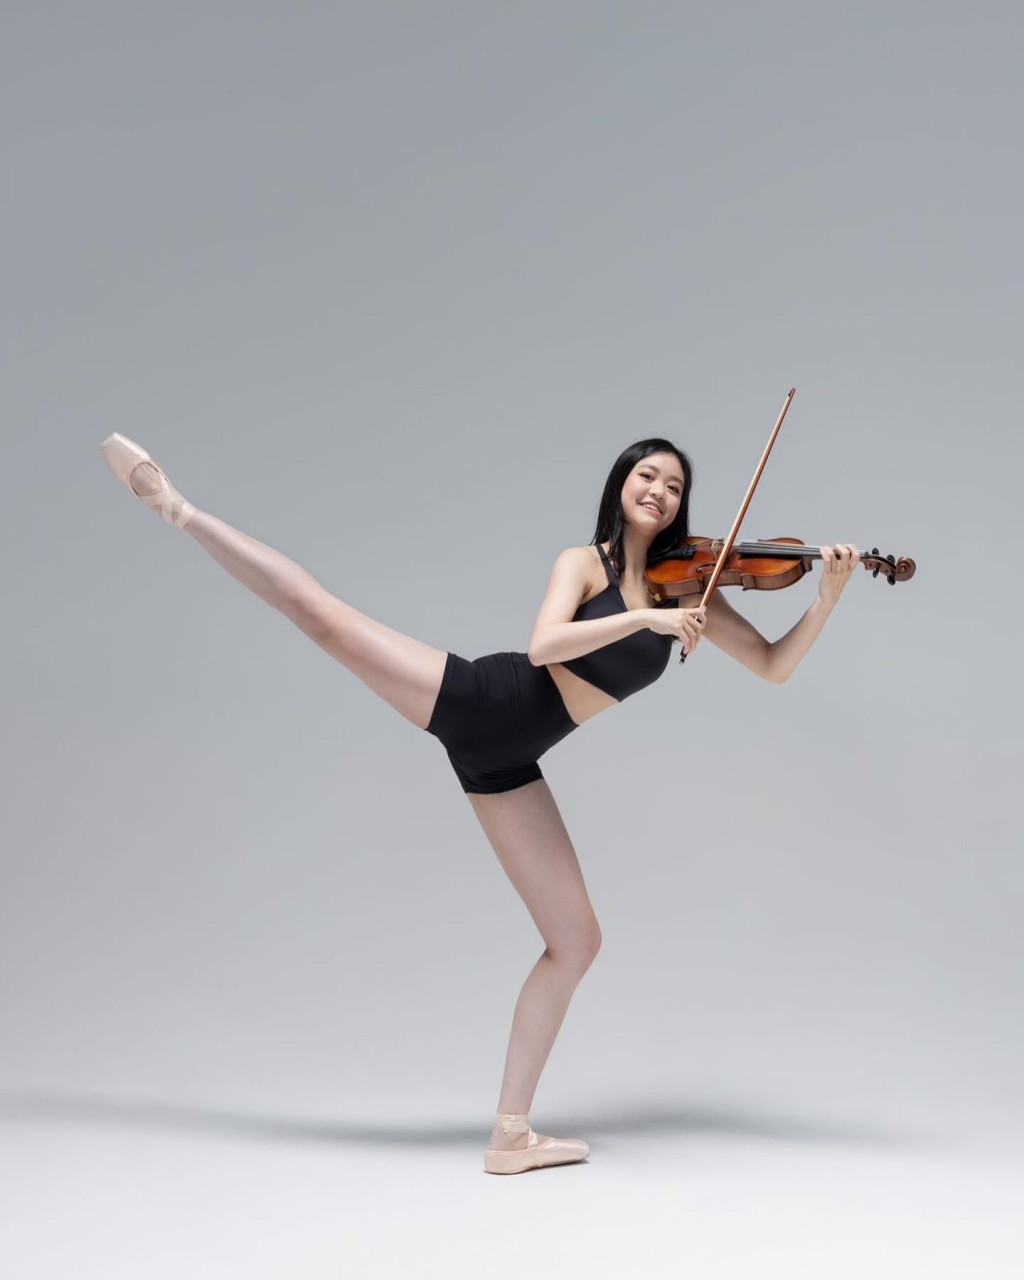 香港舞蹈劇場IG上載劉秀盈穿上芭蕾舞衣，擺出劈腿的舞蹈姿勢，同時邊拉小提琴，將兩項才華融合。